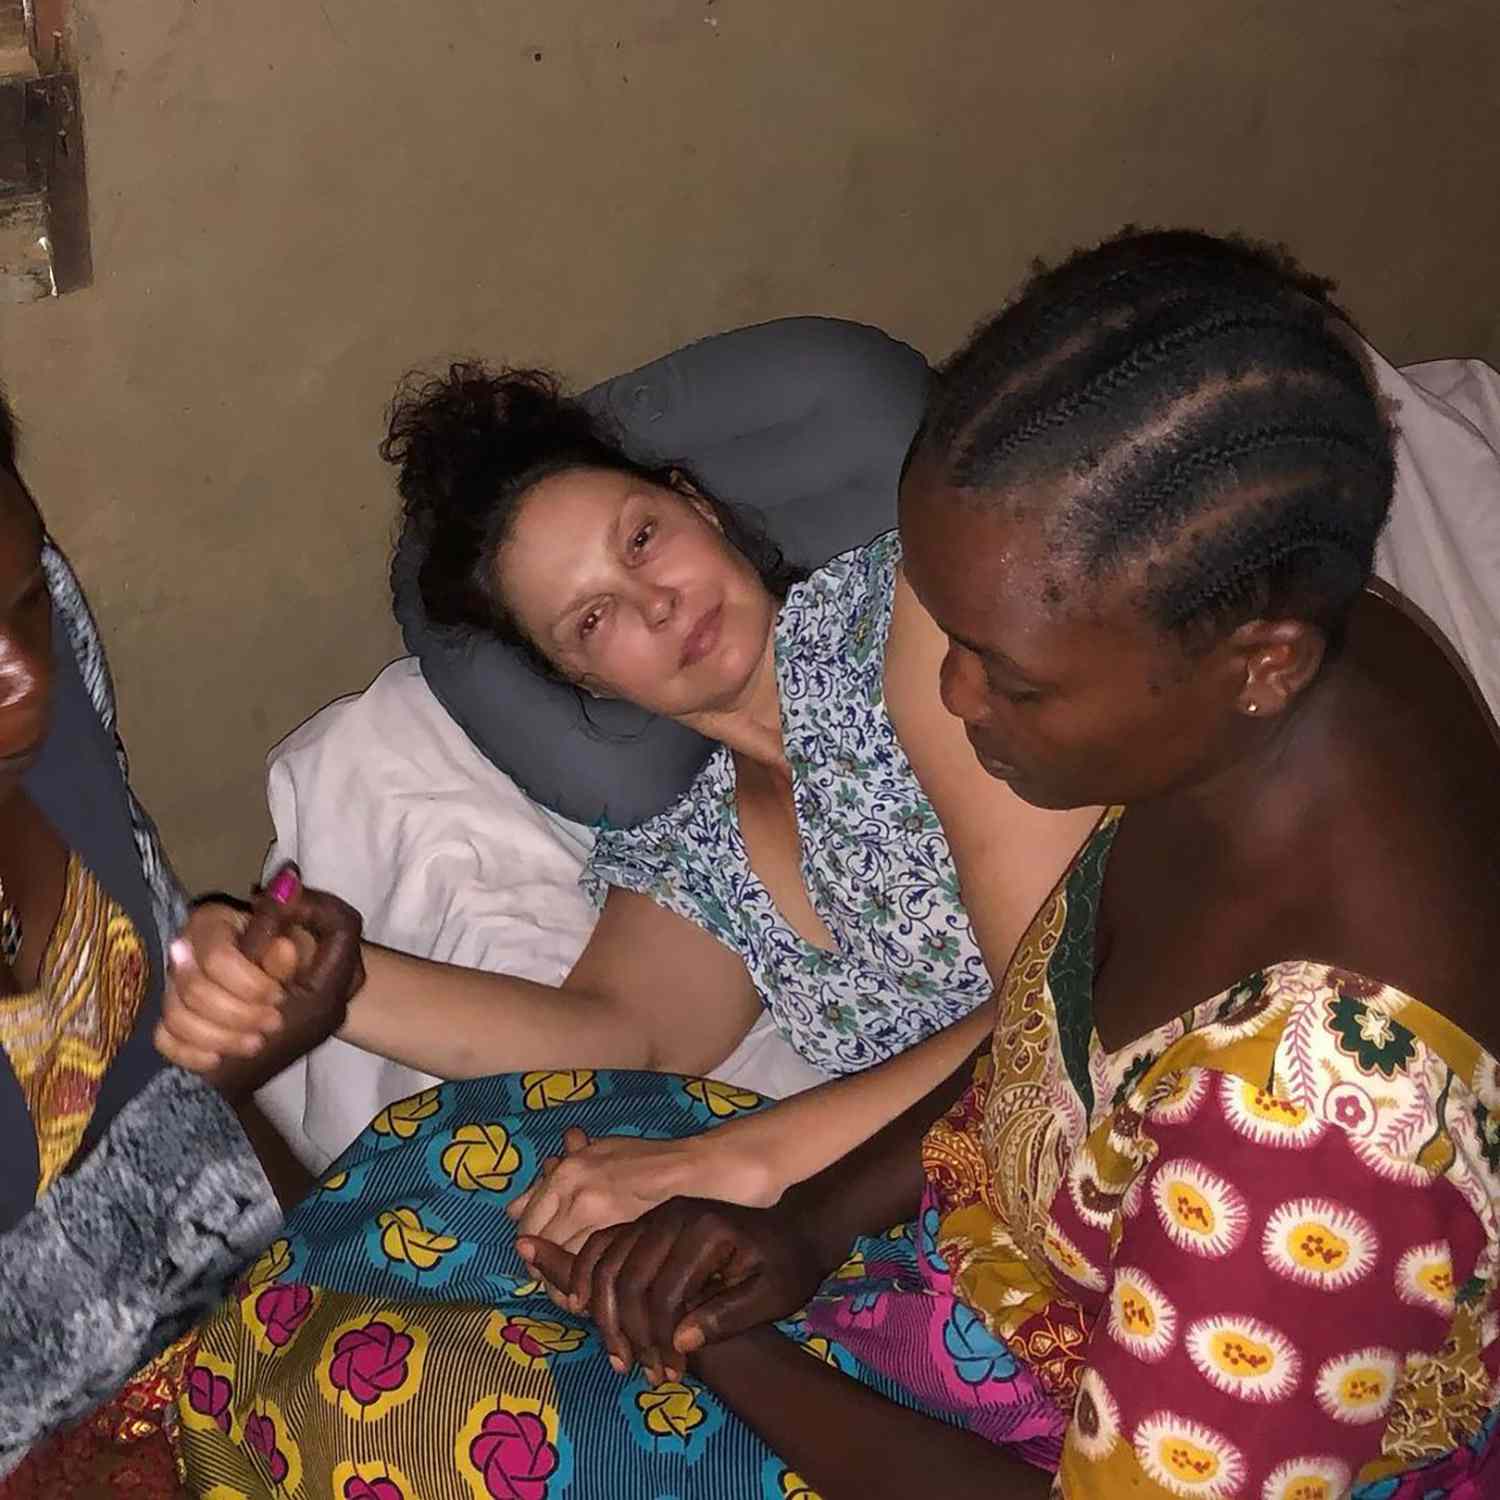 Képtalálatok a következőre: Injured Ashley Judd Rescued From Jungle on Hammock